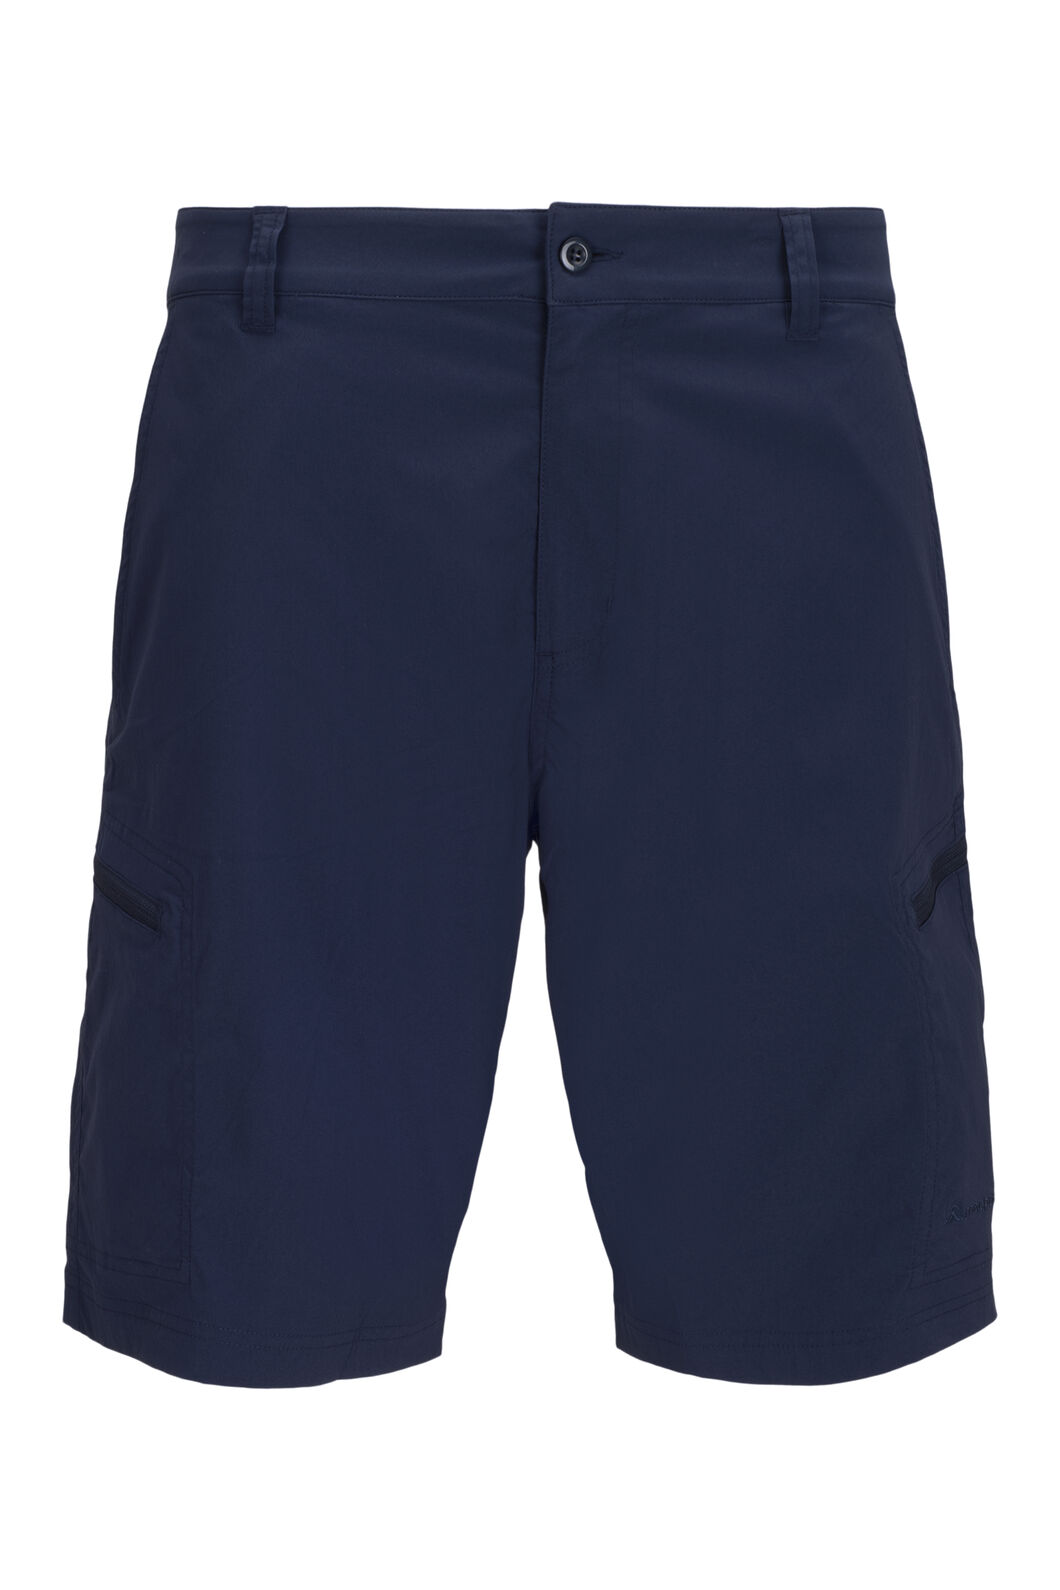 Macpac Drift Shorts — Men's | Macpac